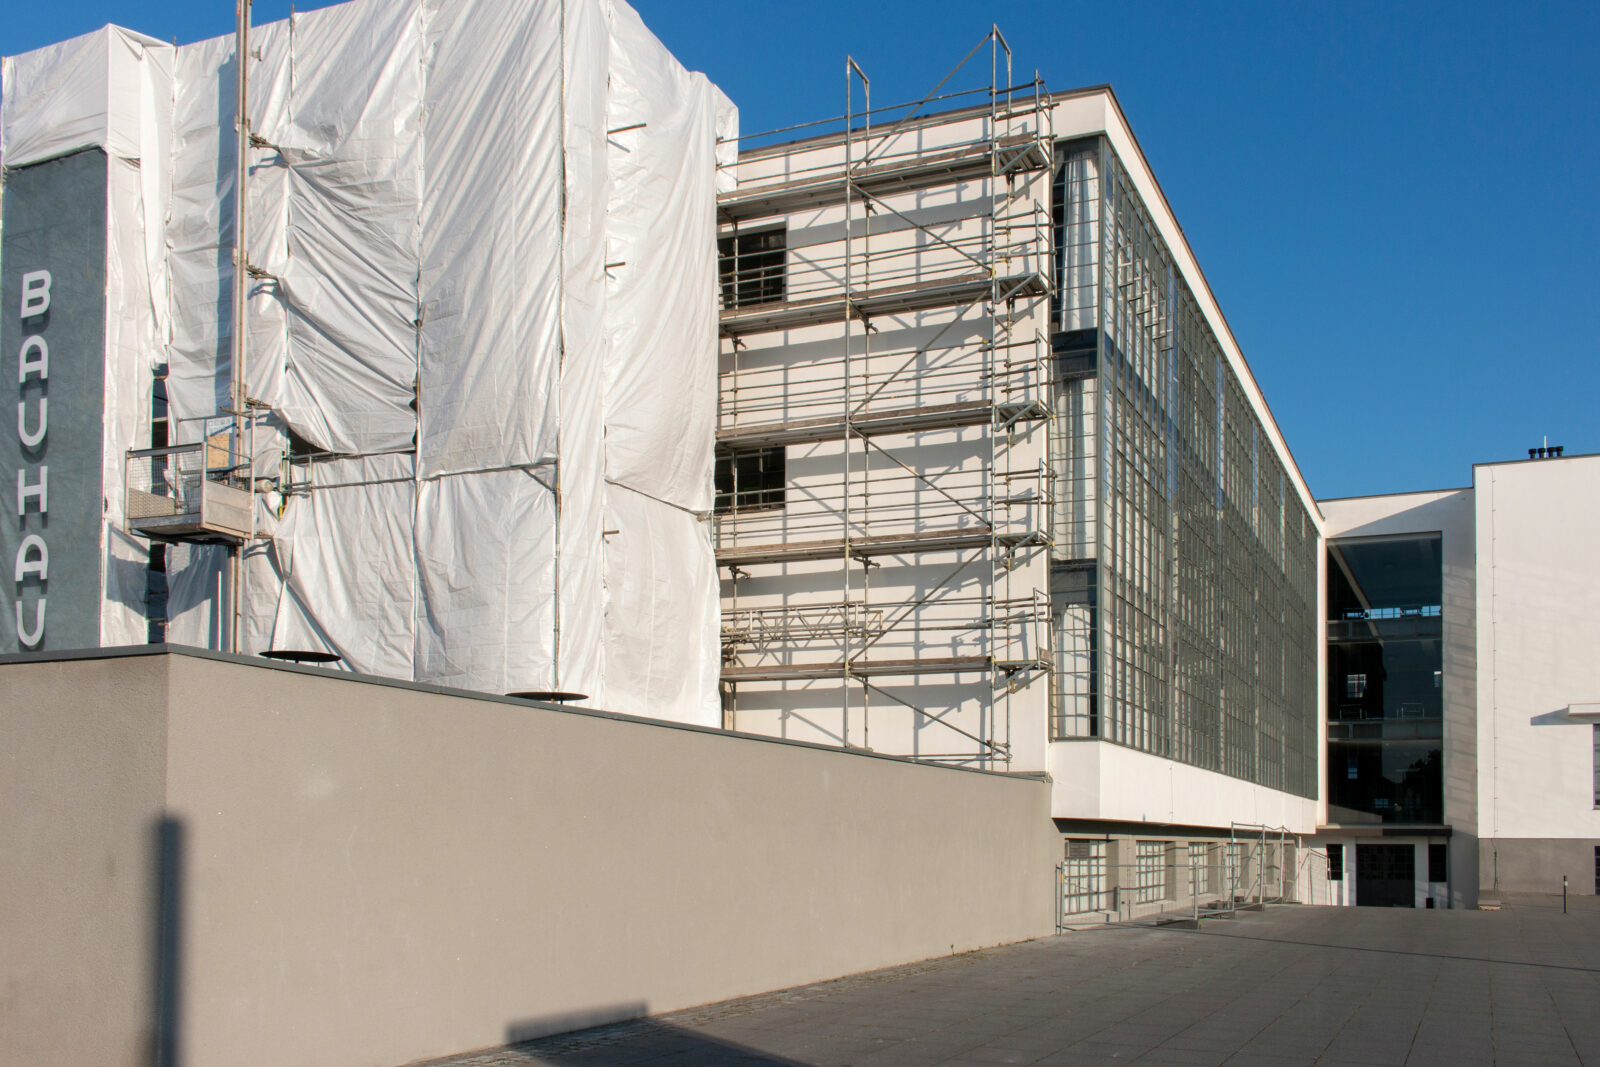 Baugerüst vor der Südseite des Bauhausgebäudes. Auf einem Banner ist der Bauhausschriftzug gedruckt. Es hängt an der Stelle des ursprünglich historischen Schriftzugs.